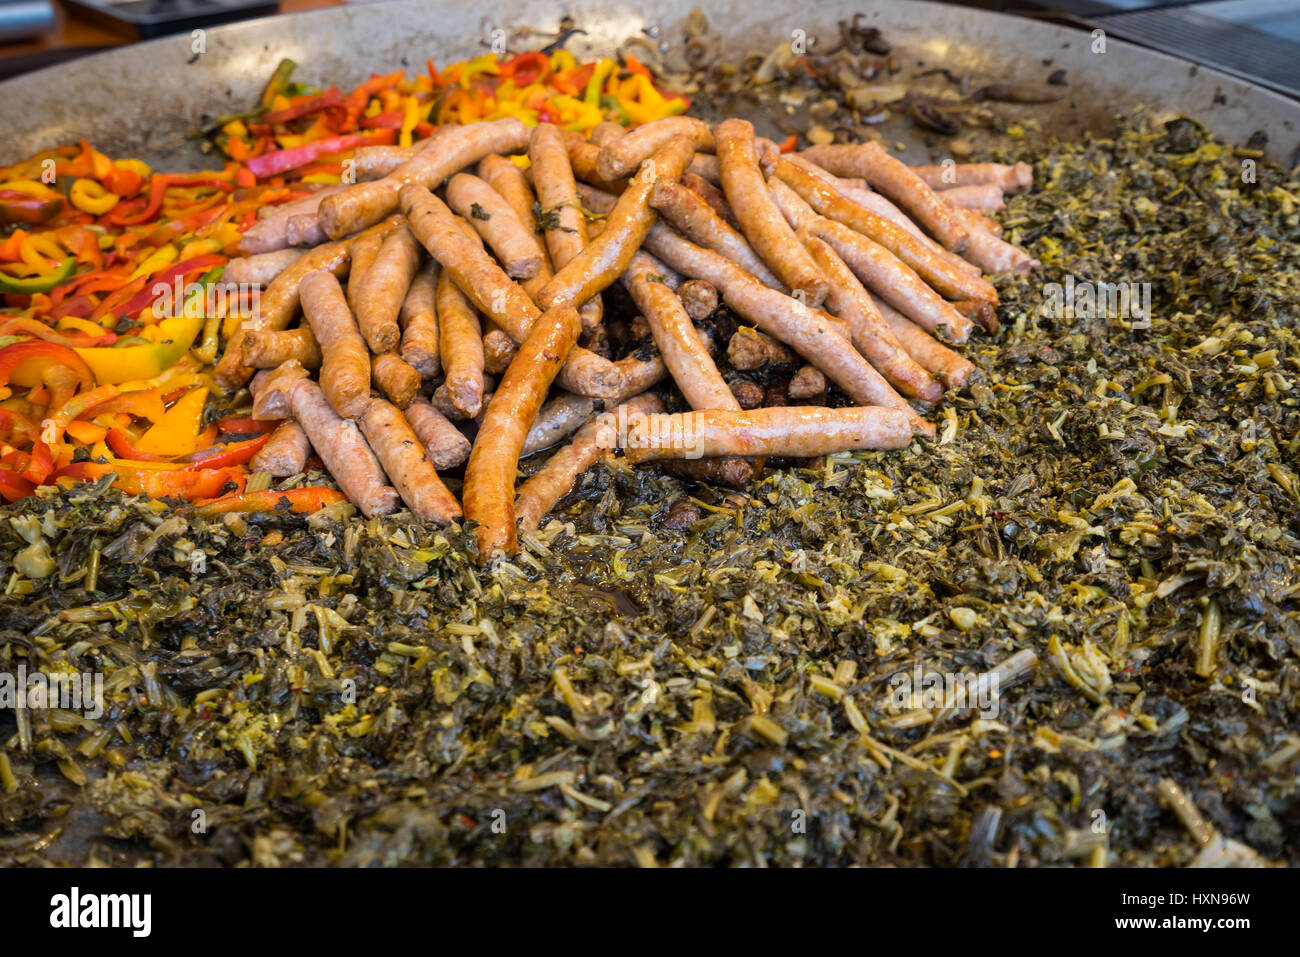 Typisches Gericht aus Apulien mit Wurst, Rübe oben und Paprika, während eine Lebensmittelmesse in einem großen Topf zubereitet Stockfoto